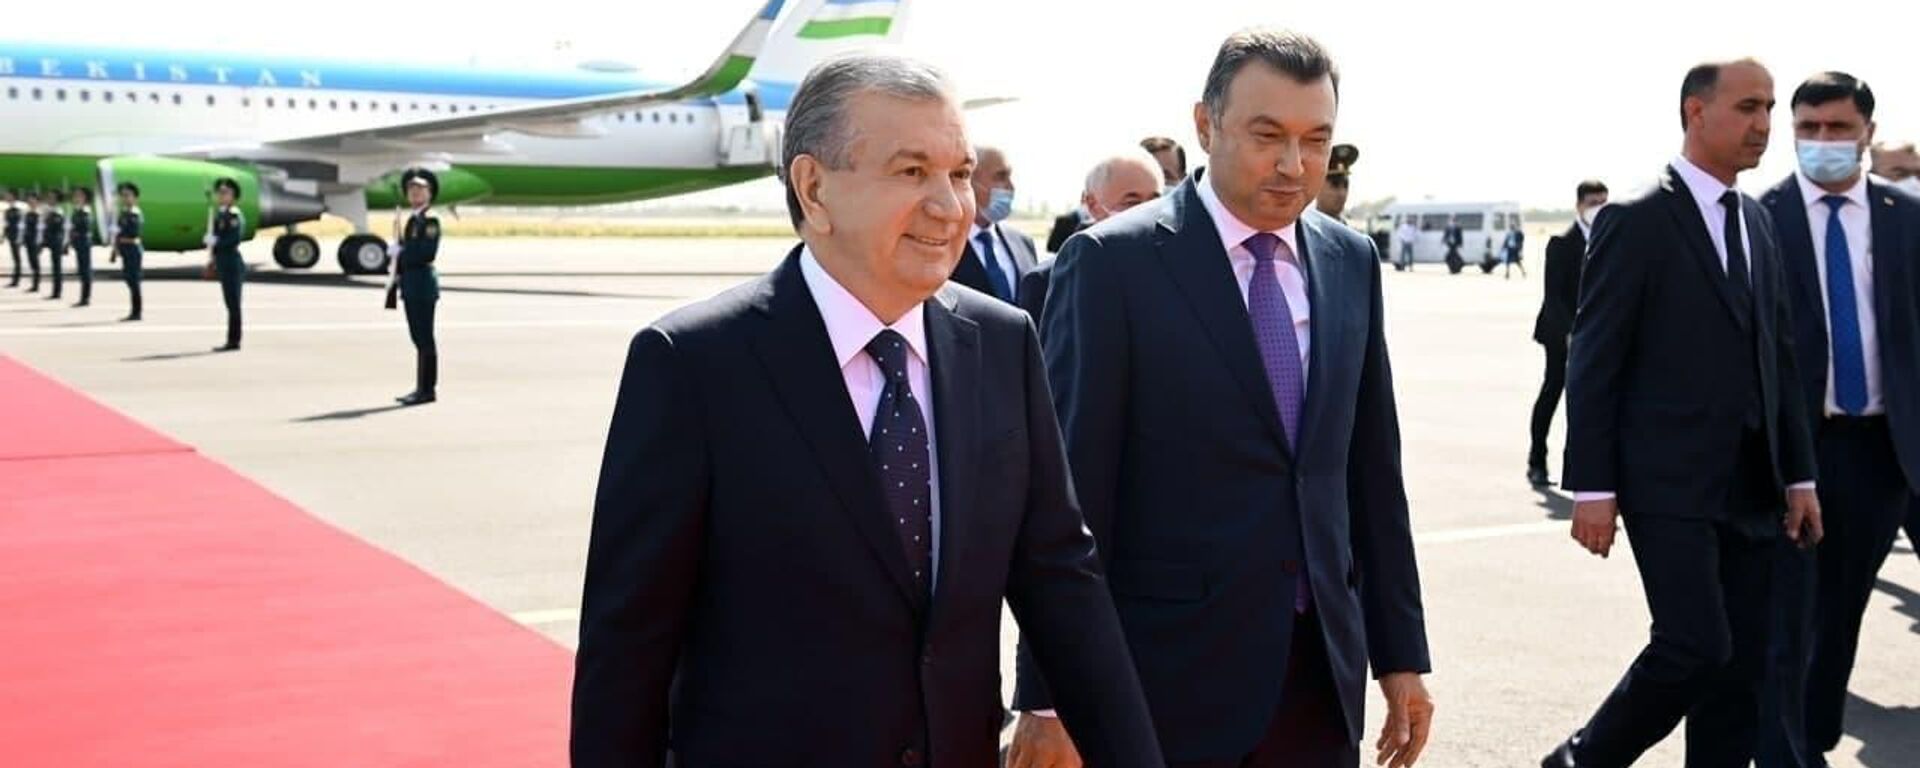 Президент Шавкат Мирзиёев прибыл в город Душанбе для участия в саммите ШОС - Sputnik Ўзбекистон, 1920, 16.09.2021